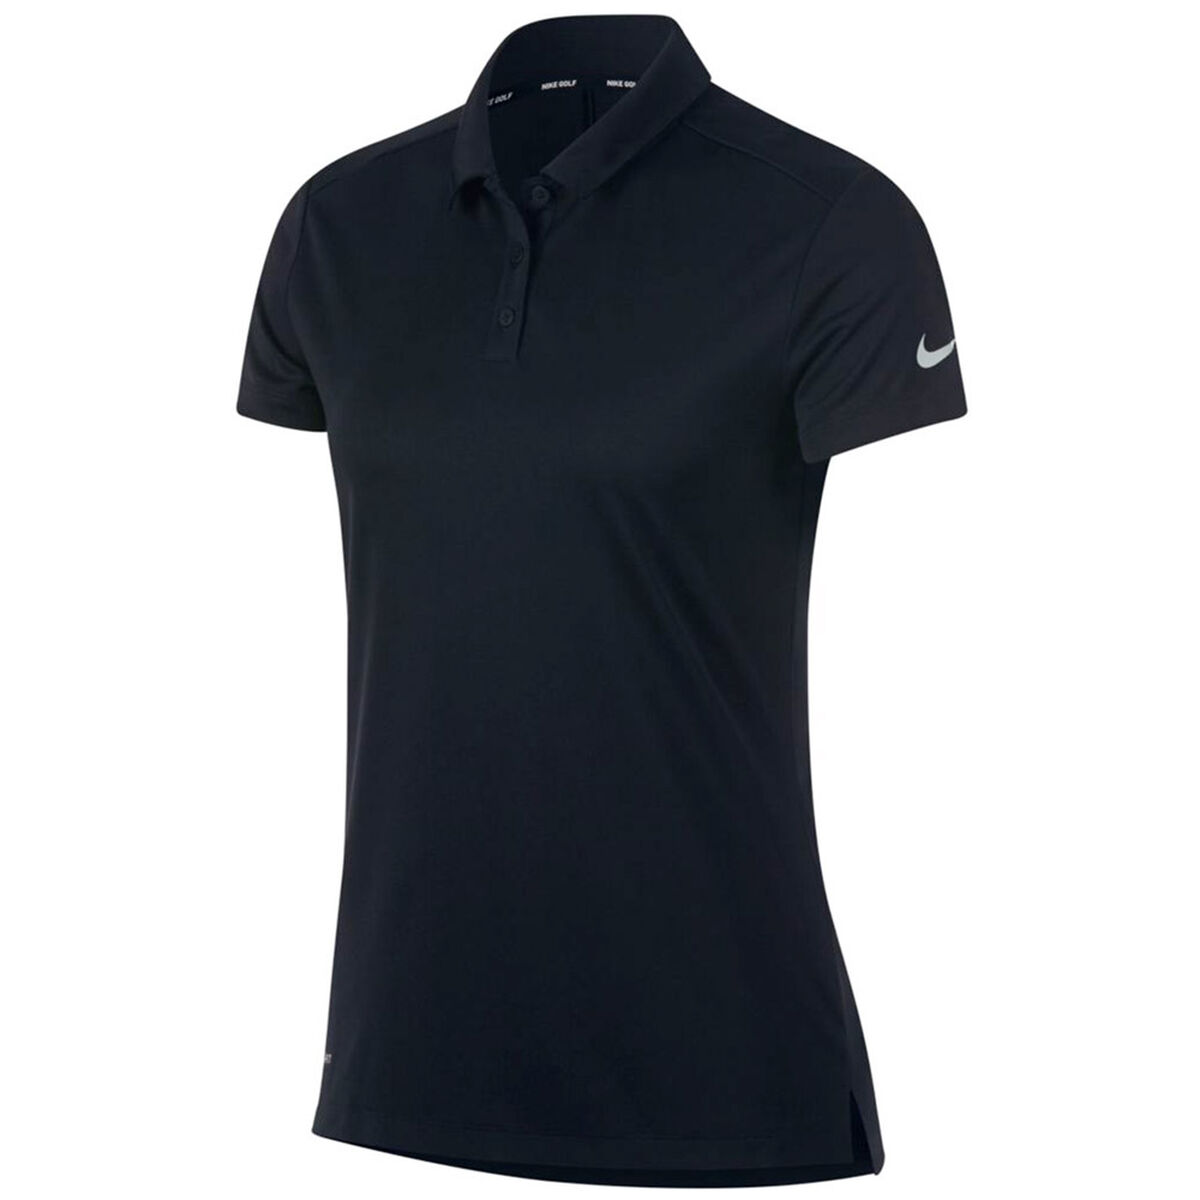 Polo Nike Golf Dry Pour Femme, femme, Large, Noir/Argent | Online Golf